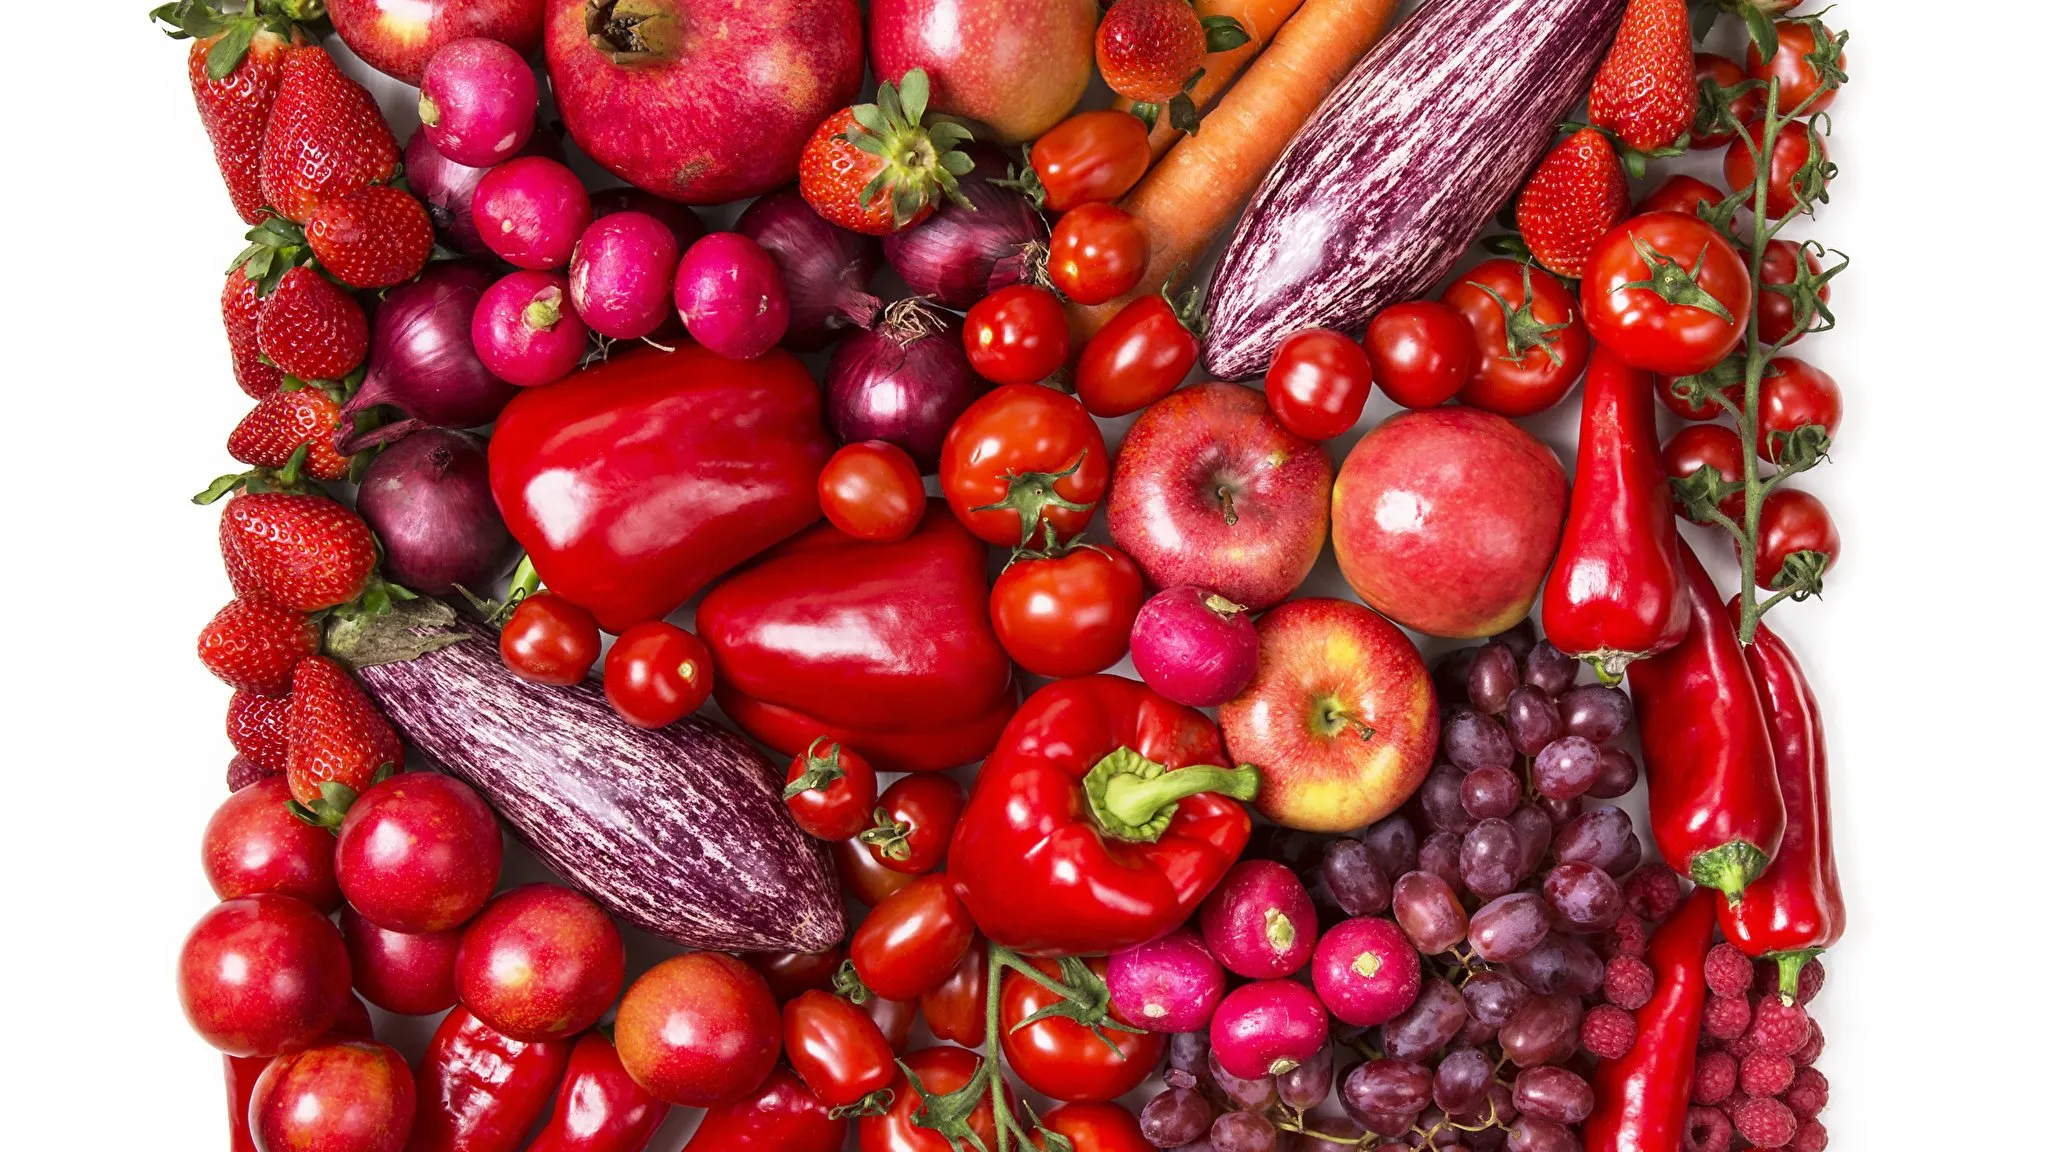 Овощи и фрукты. Красные овощи и фрукты. Овощи, фрукты, ягоды. Овощи и фрукты красного цвета.